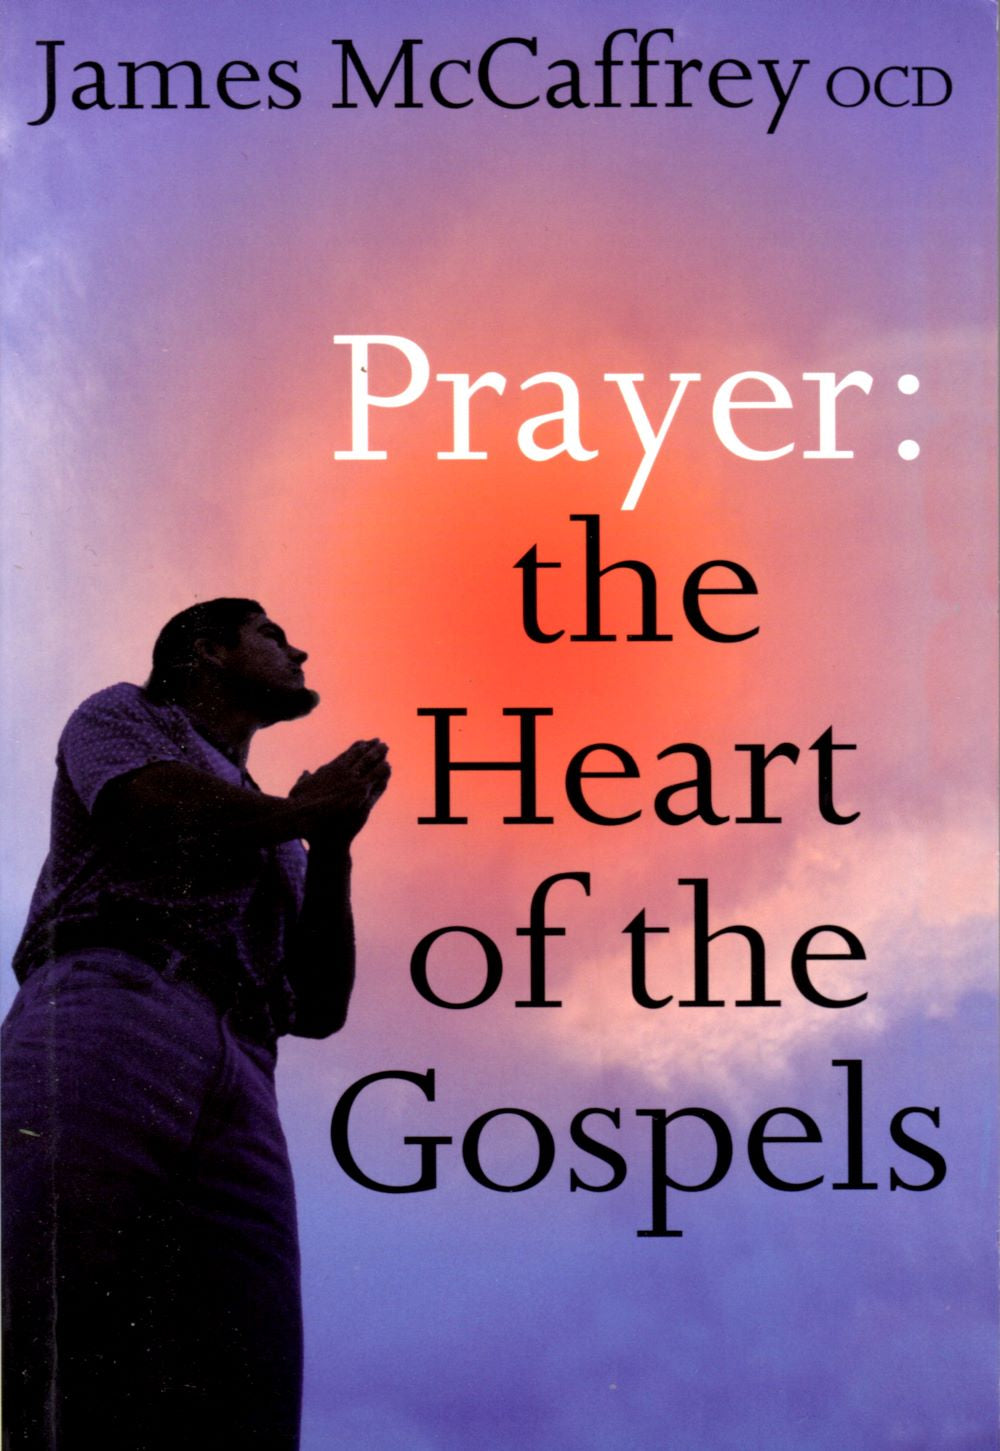 PRAYER: The Heart of the Gospels